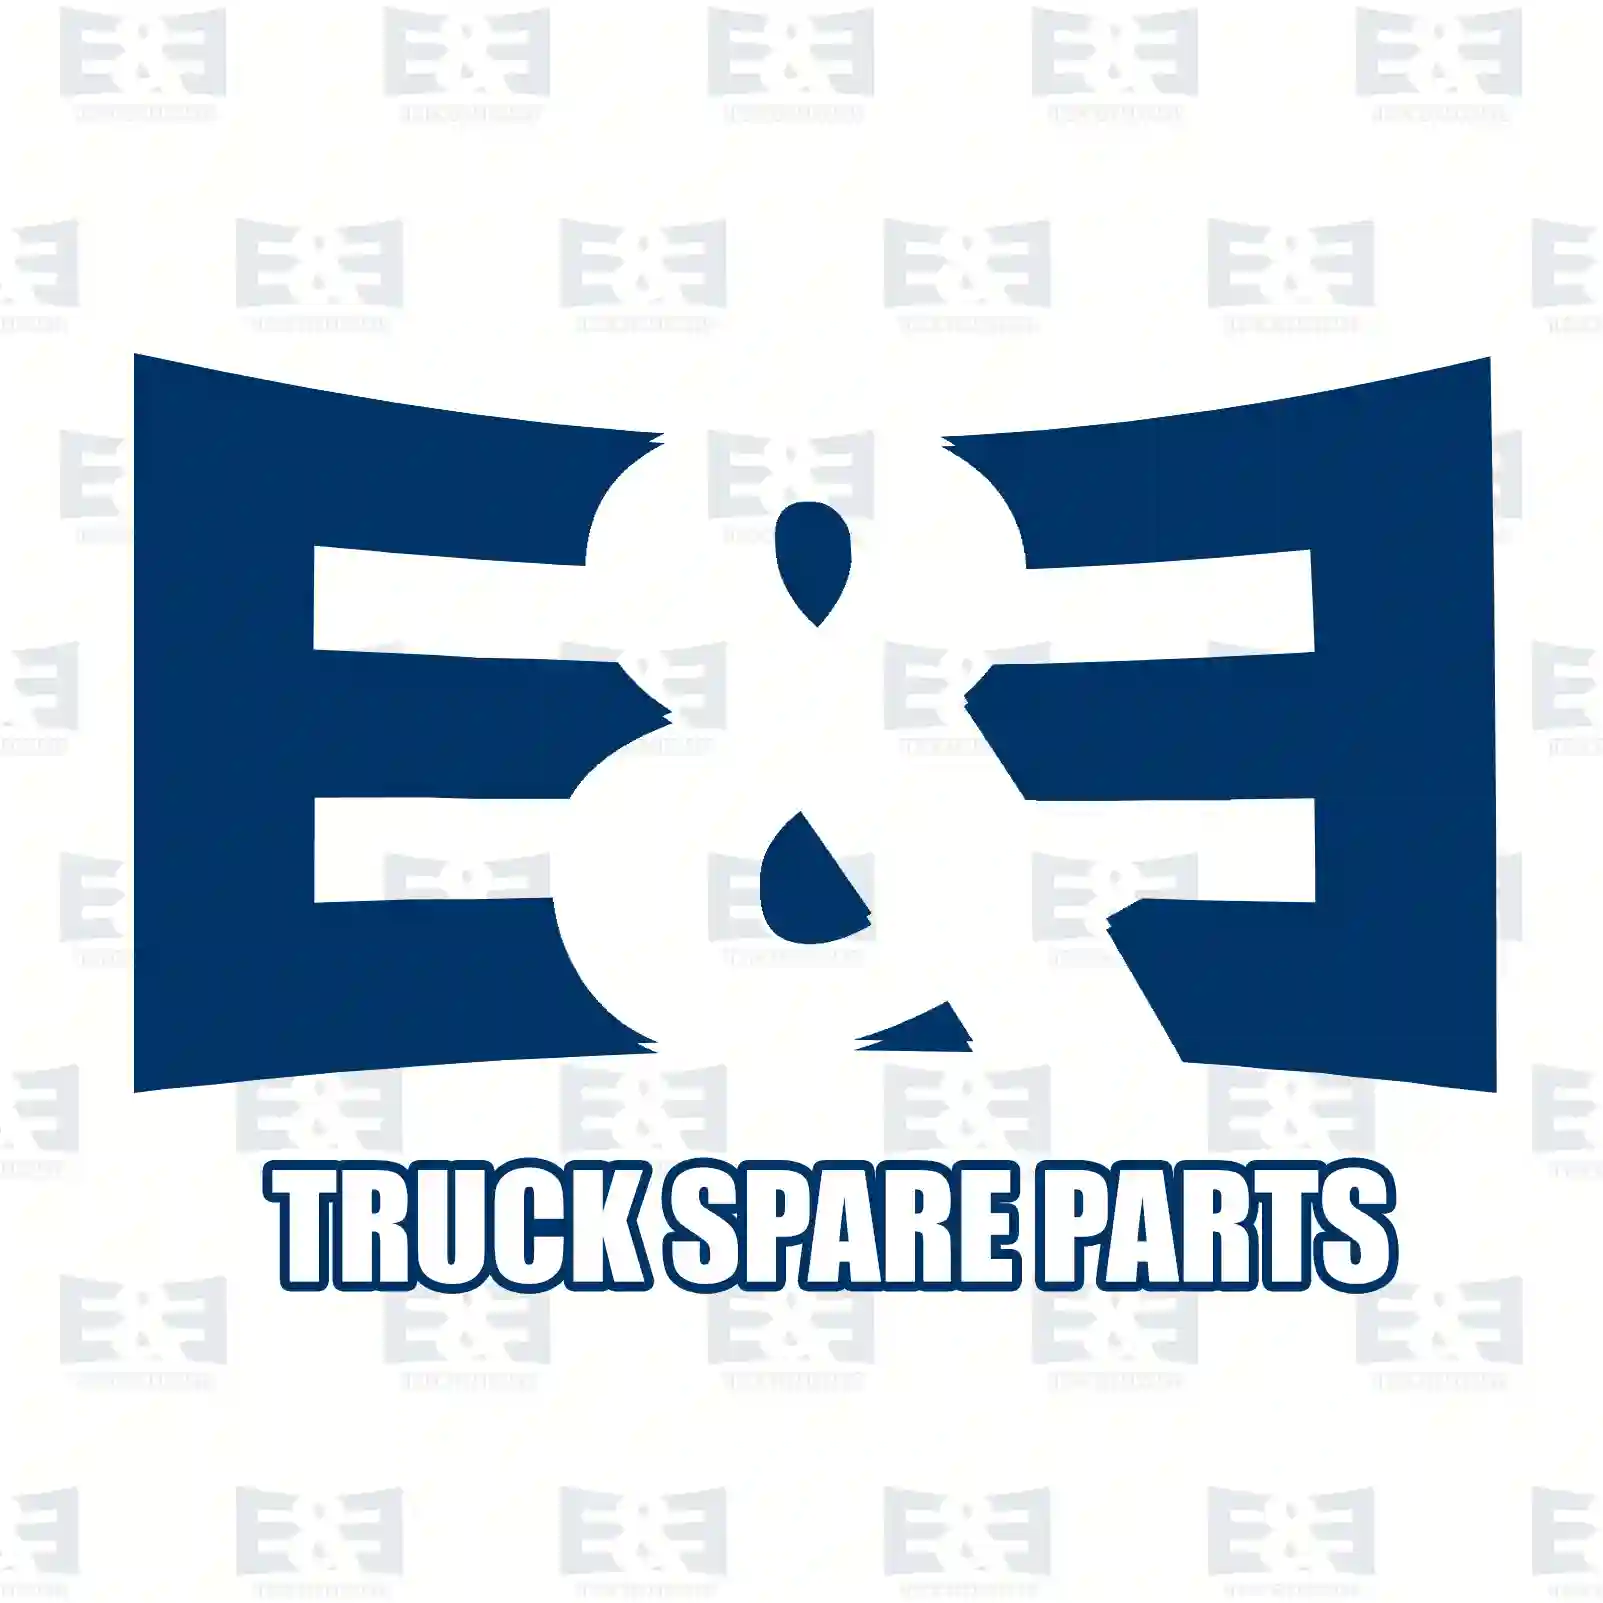 O-ring, 2E2285623, 7400977030, 977030, ZG02899-0008, ||  2E2285623 E&E Truck Spare Parts | Truck Spare Parts, Auotomotive Spare Parts O-ring, 2E2285623, 7400977030, 977030, ZG02899-0008, ||  2E2285623 E&E Truck Spare Parts | Truck Spare Parts, Auotomotive Spare Parts